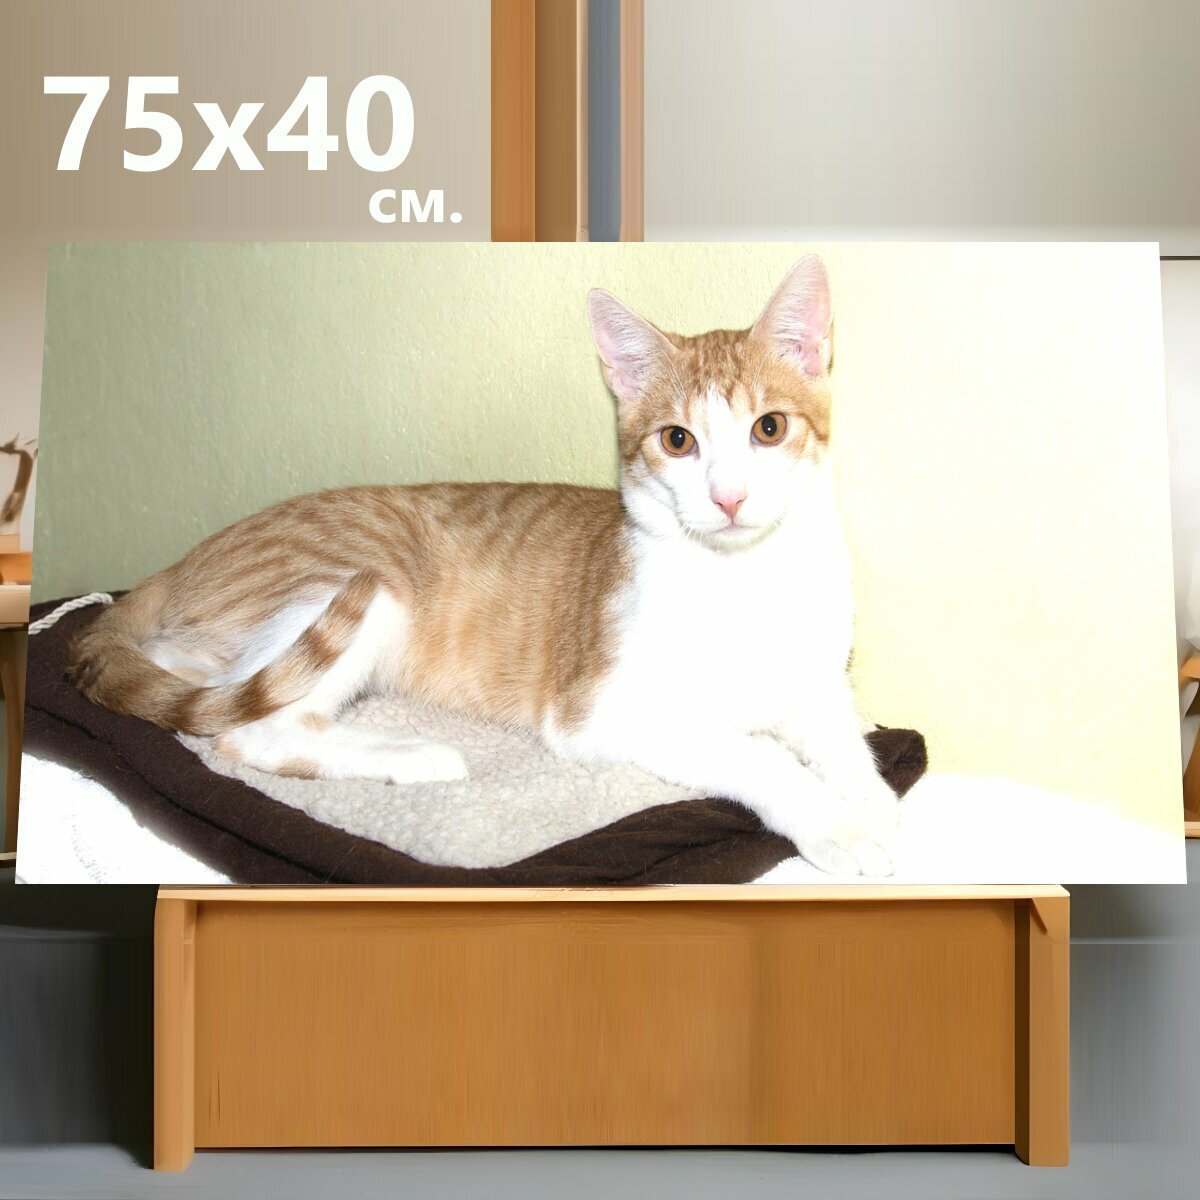 Картина на холсте "Кот, домашняя кошка, кошка породы" на подрамнике 75х40 см. для интерьера